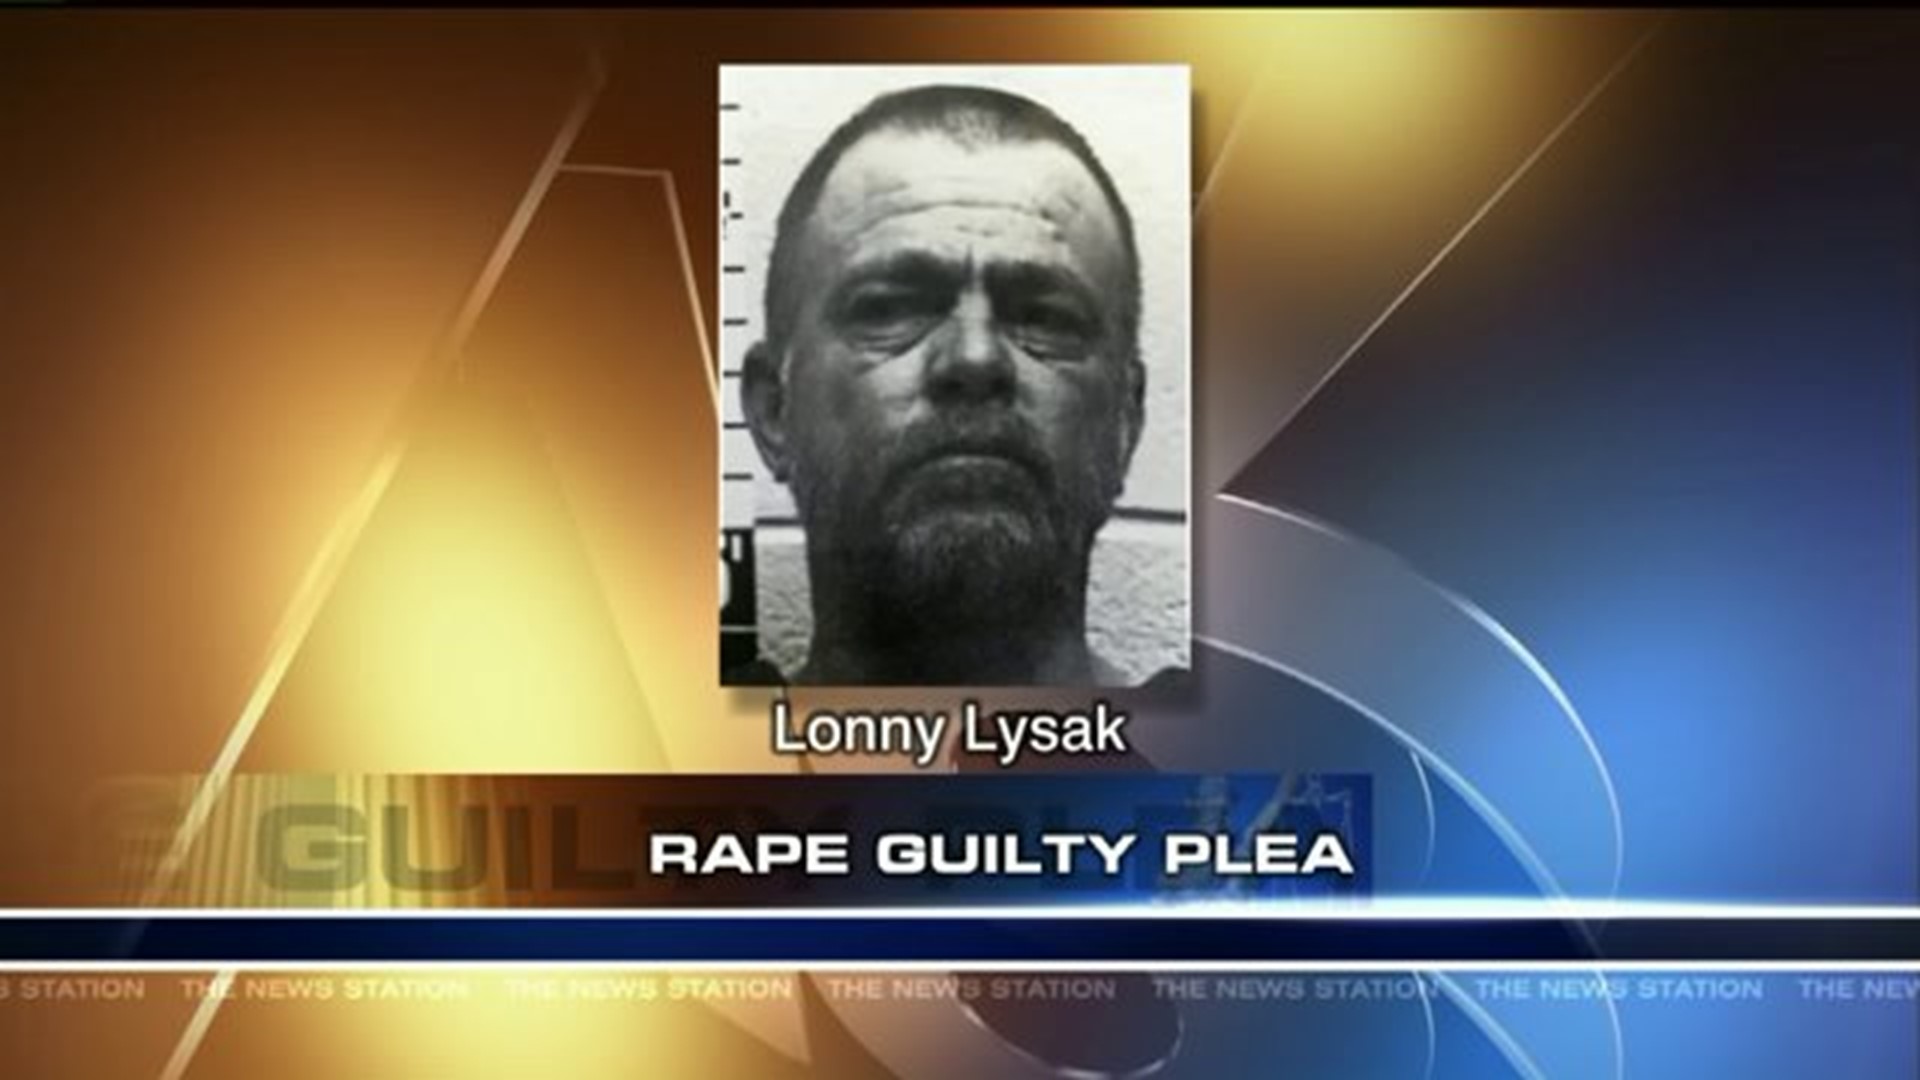 Man Pleads Guilty to Rape